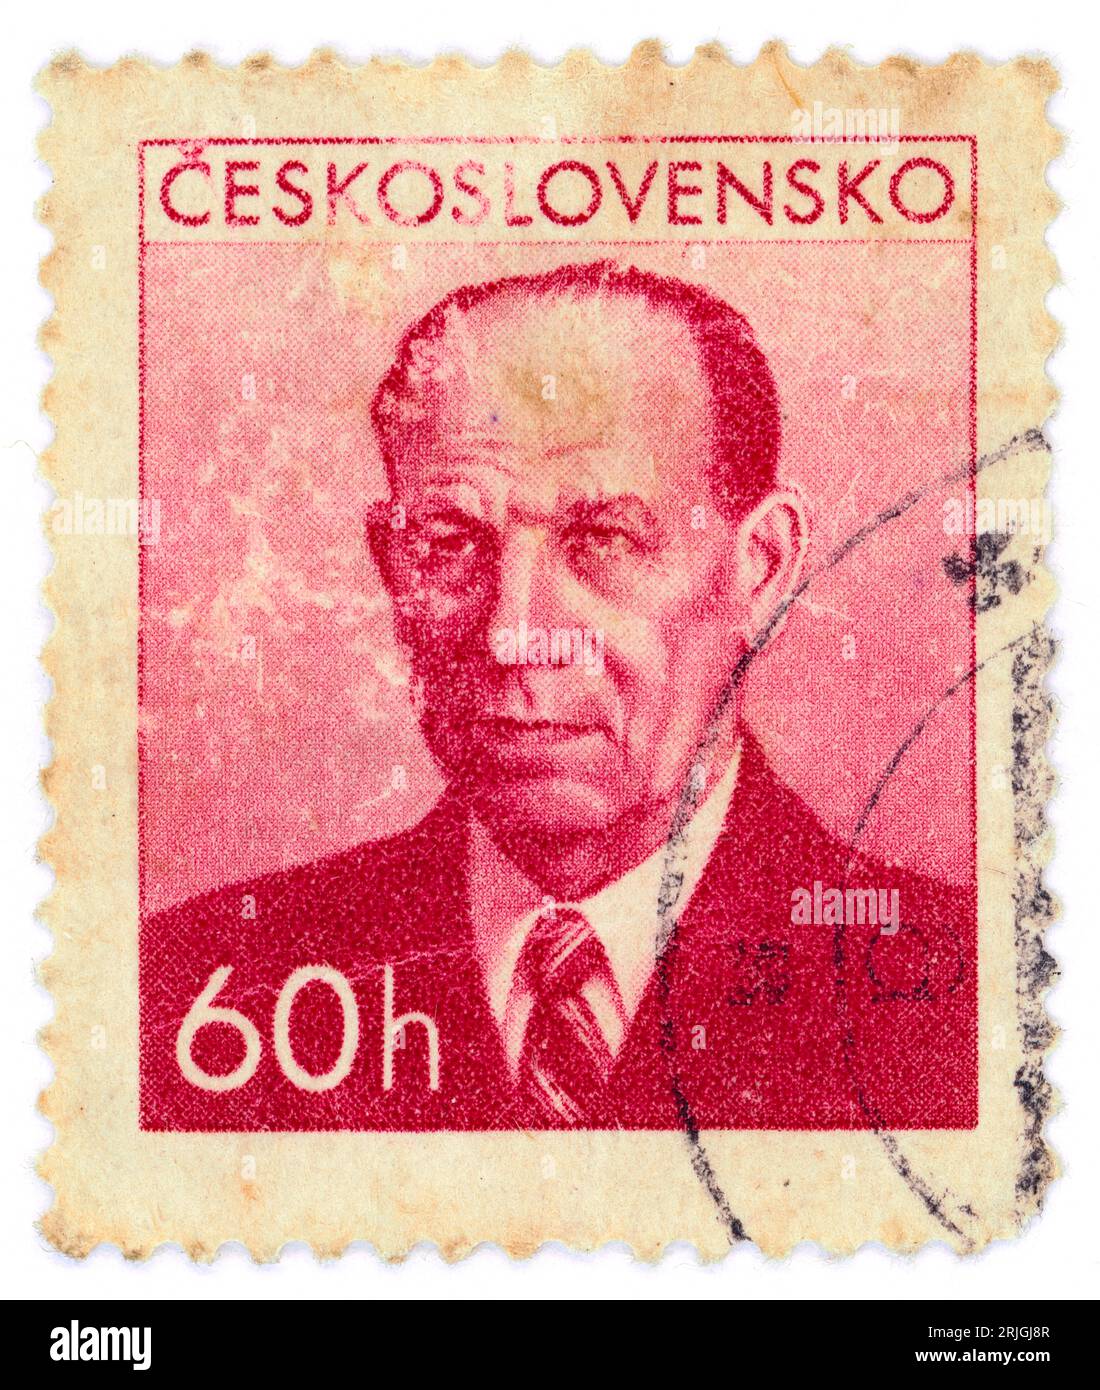 Antonín Zápotocký (1884 – 1957). Timbre-poste émis en Tchécoslovaquie en 1953. Antonín Zápotocký était un homme politique communiste tchèque et homme d'État qui a été Premier ministre de la Tchécoslovaquie de 1948 à 1953 et président de la Tchécoslovaquie de 1953 à 1957. Banque D'Images